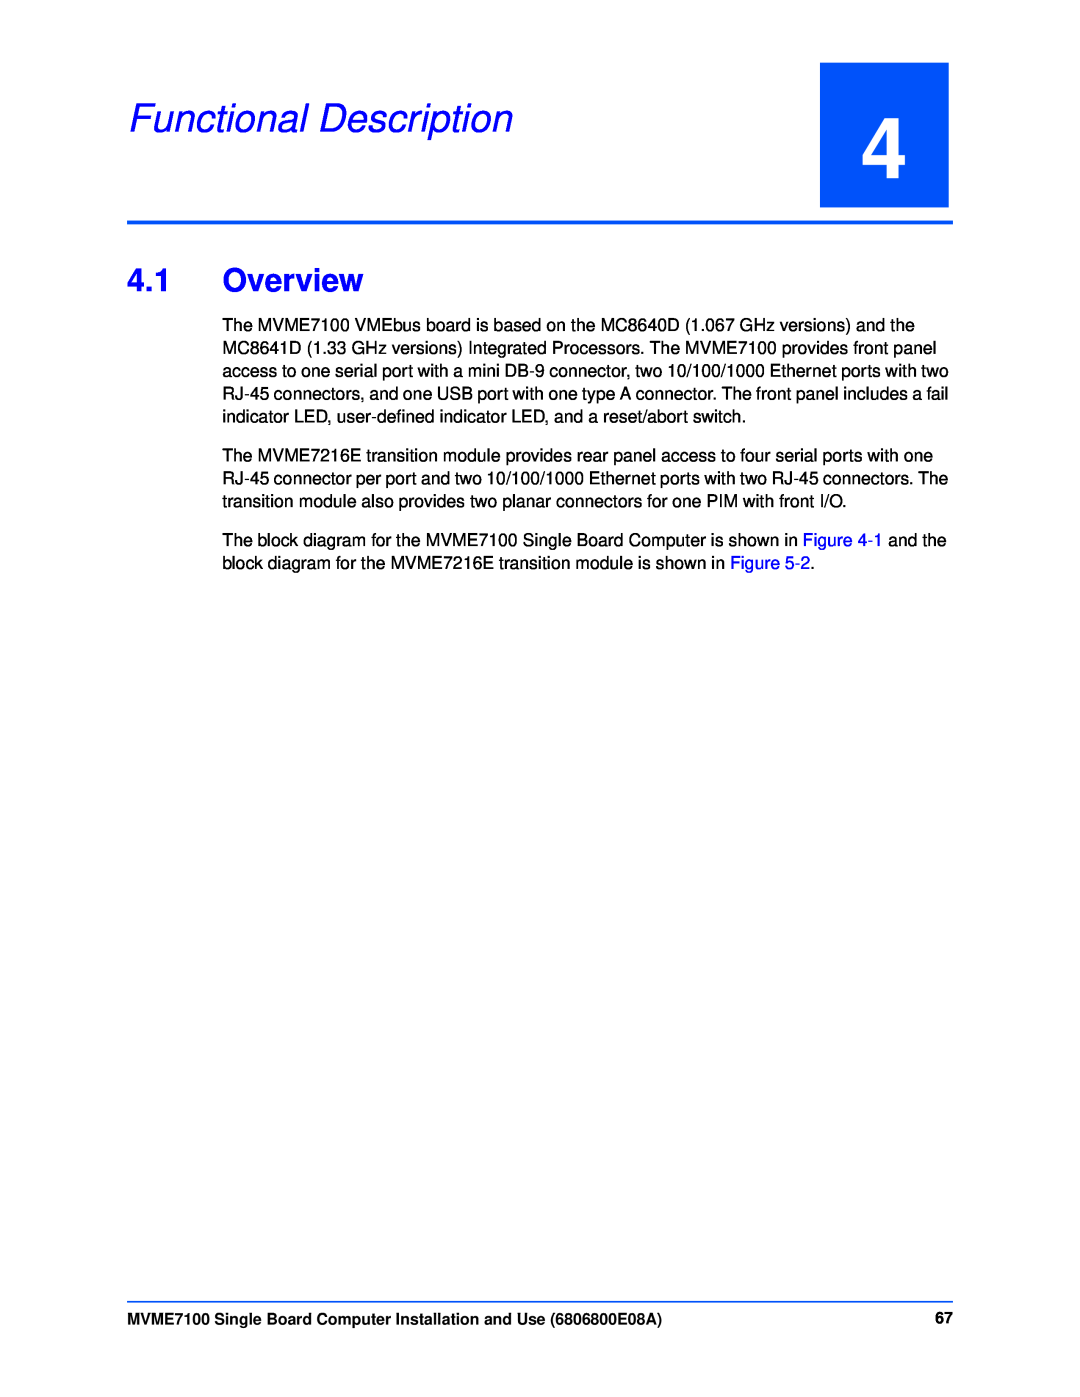 Emerson MVME7100 manual Functional Description, Overview 